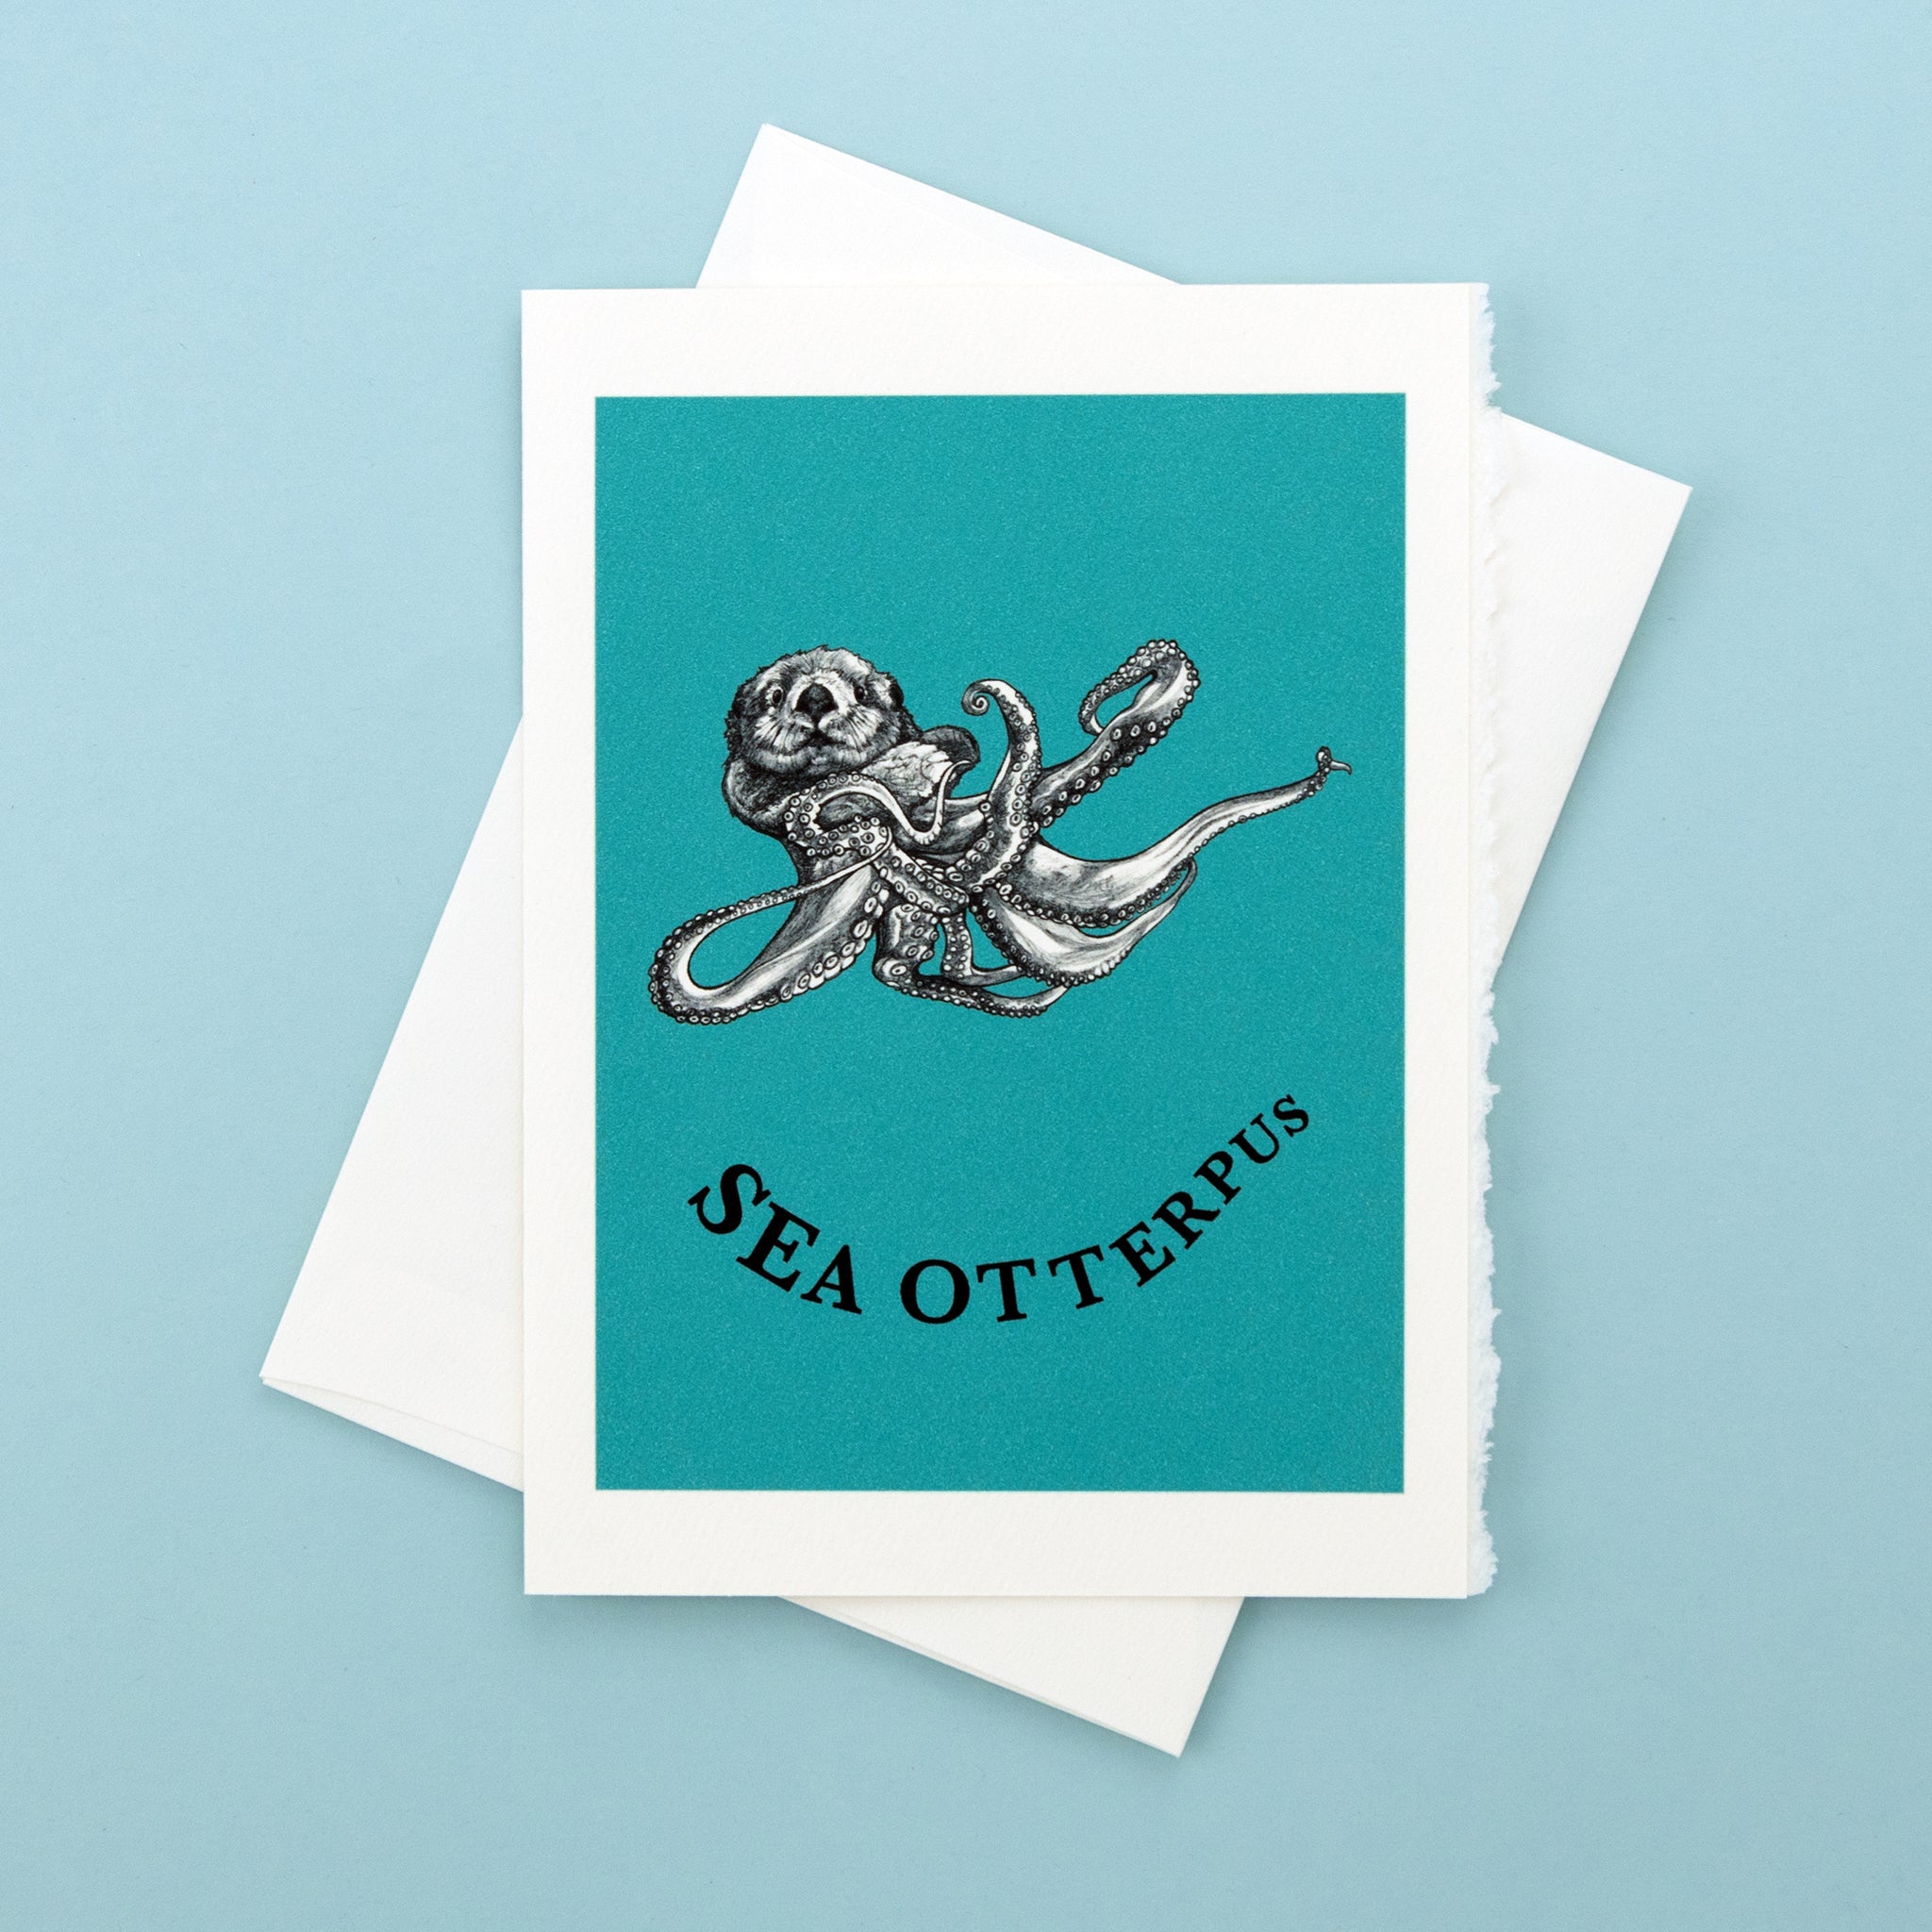 Sea Otterpus | Sea Otter + Octopus Hybrid Animal | 5x7" Greeting Card